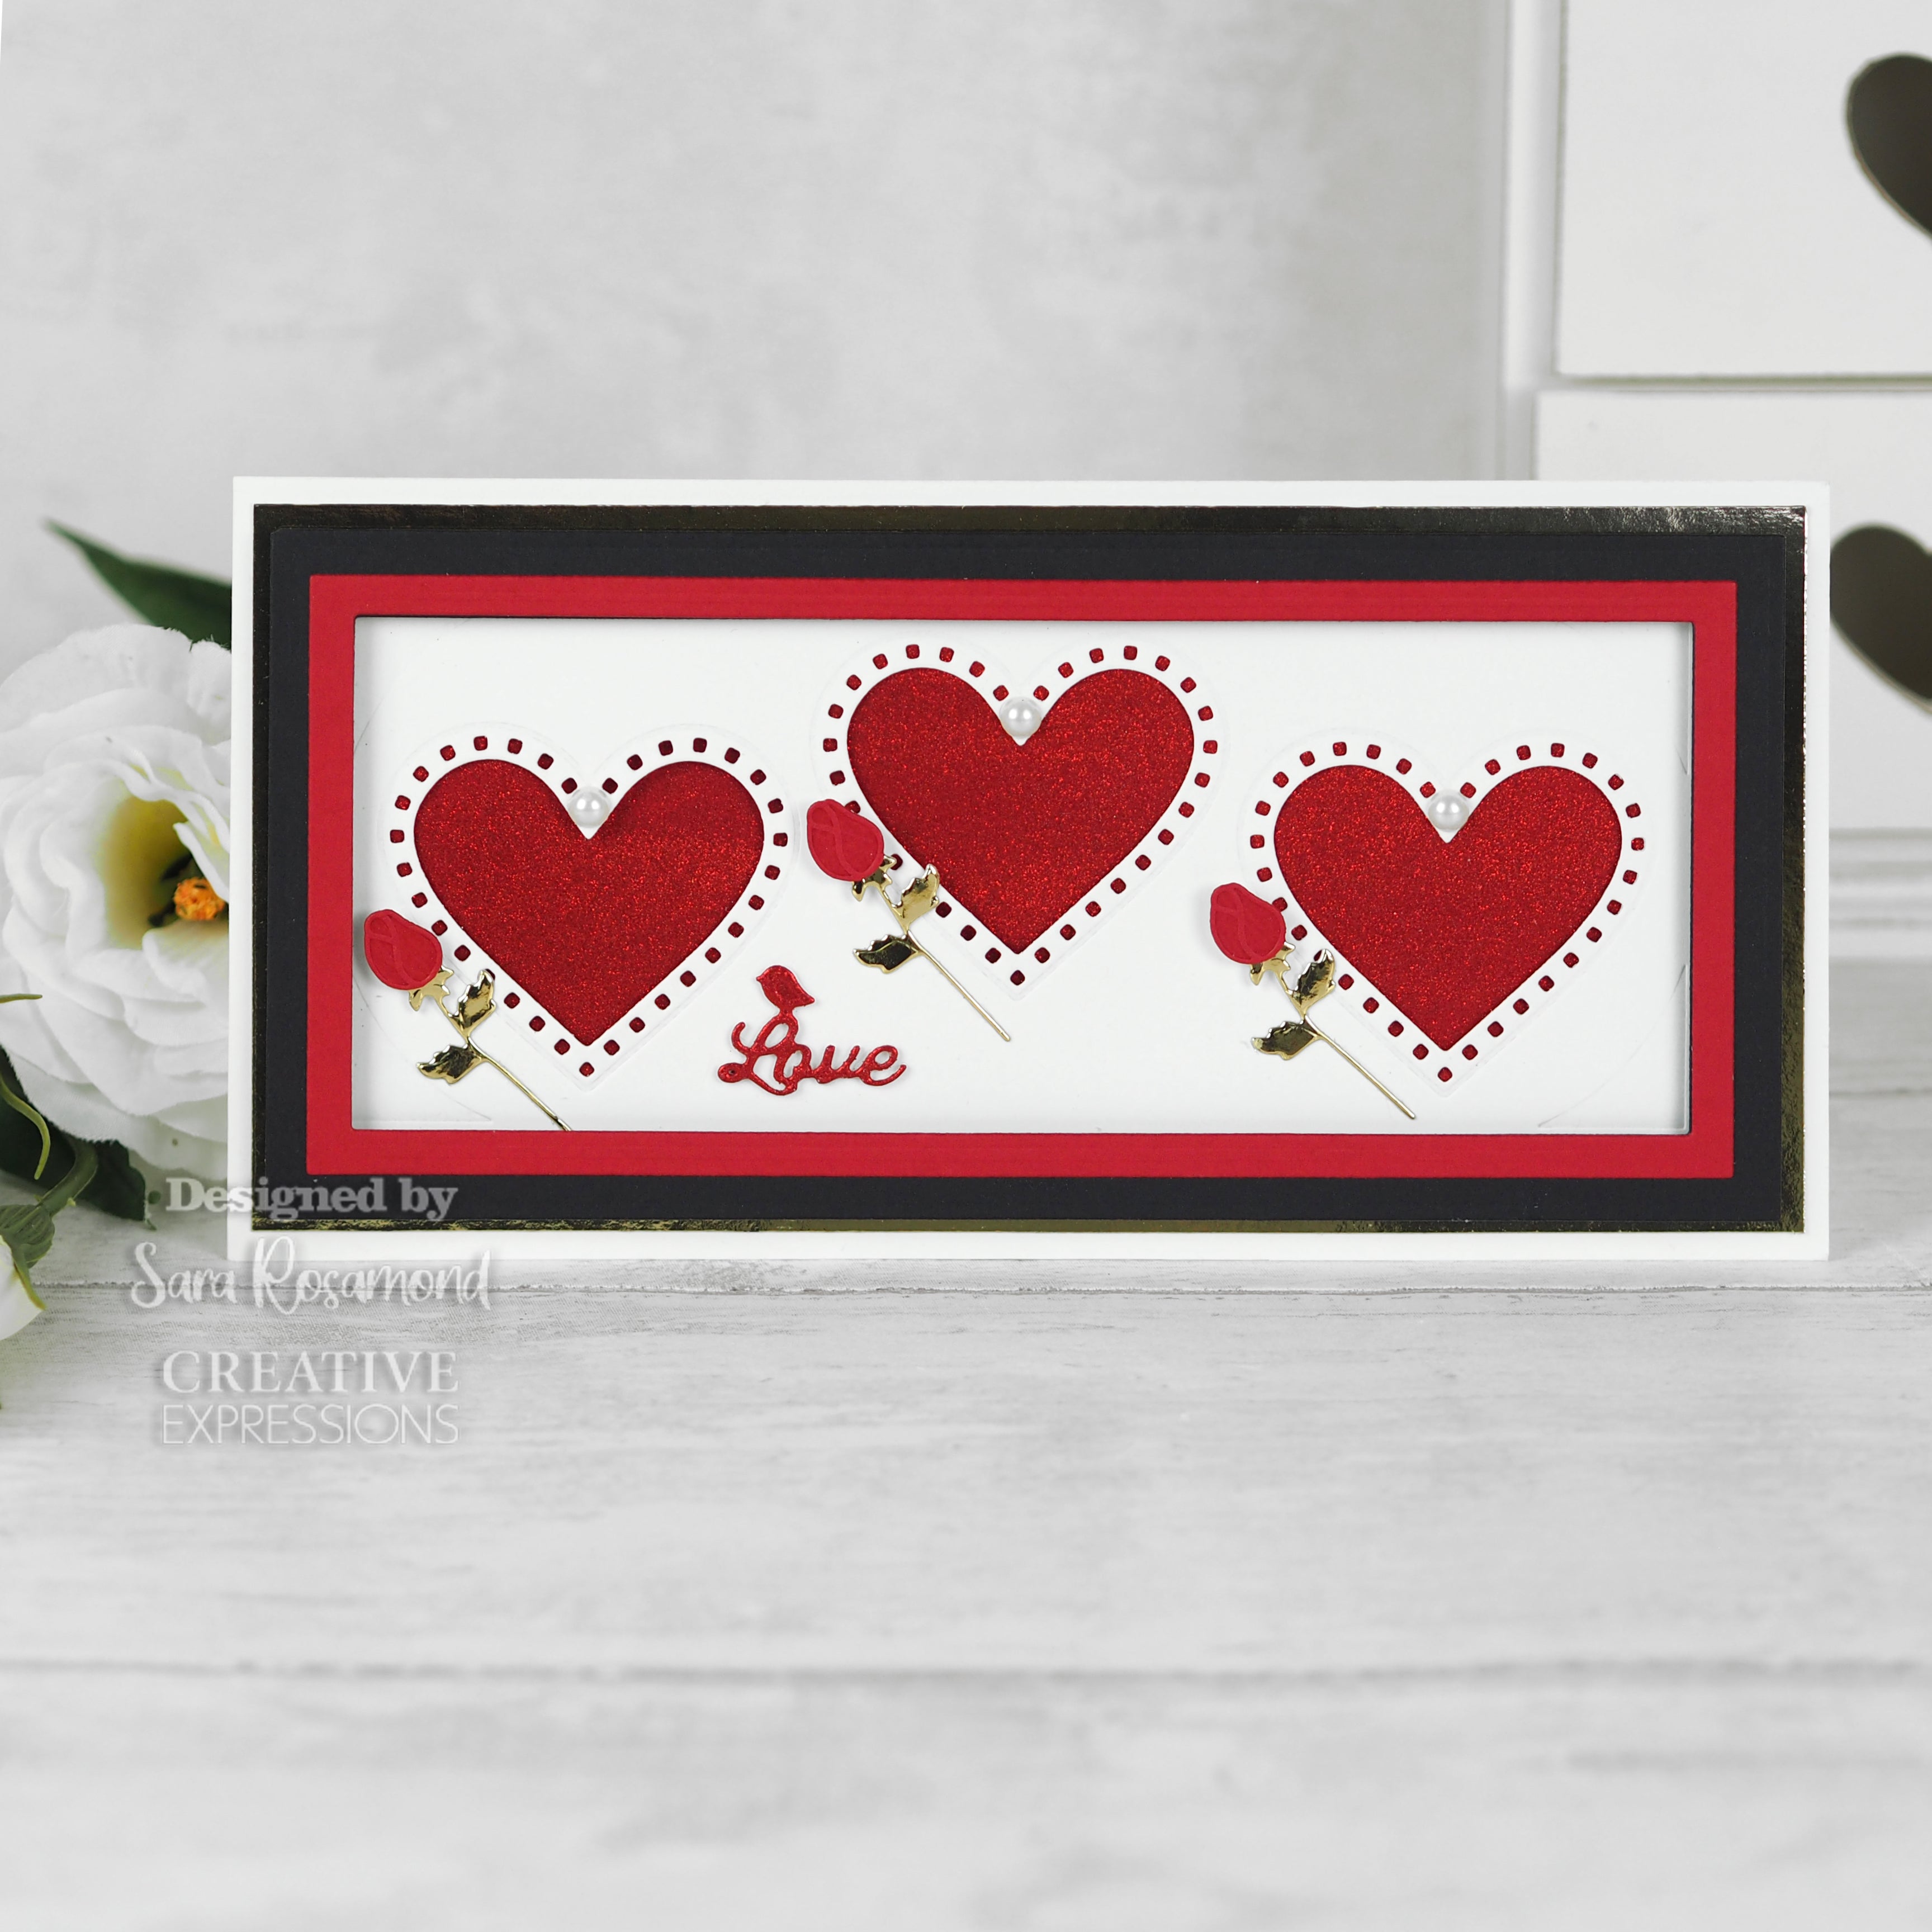 Creative Expressions Sue Wilson Slimline Collection Decorative Heart Aperture Trio Craft Die